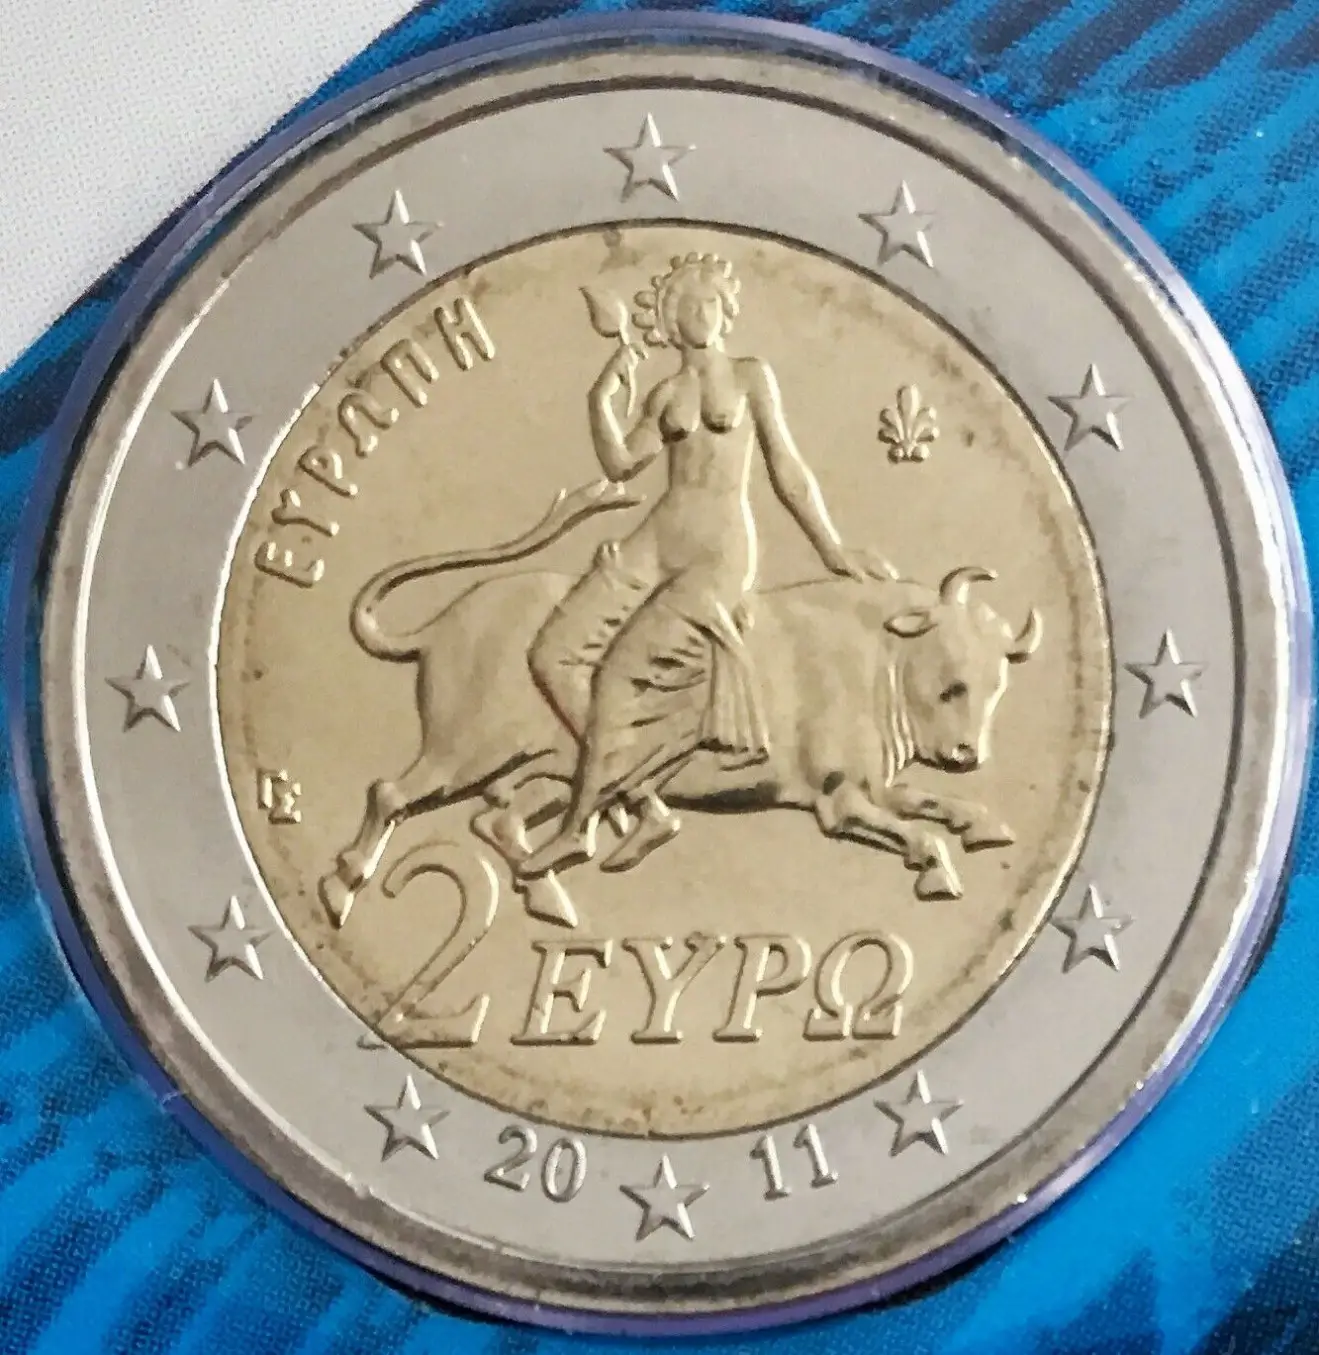 Griechenland Euro Kursmünzen 2011 ᐅ Wert, Infos und Bilder bei euro